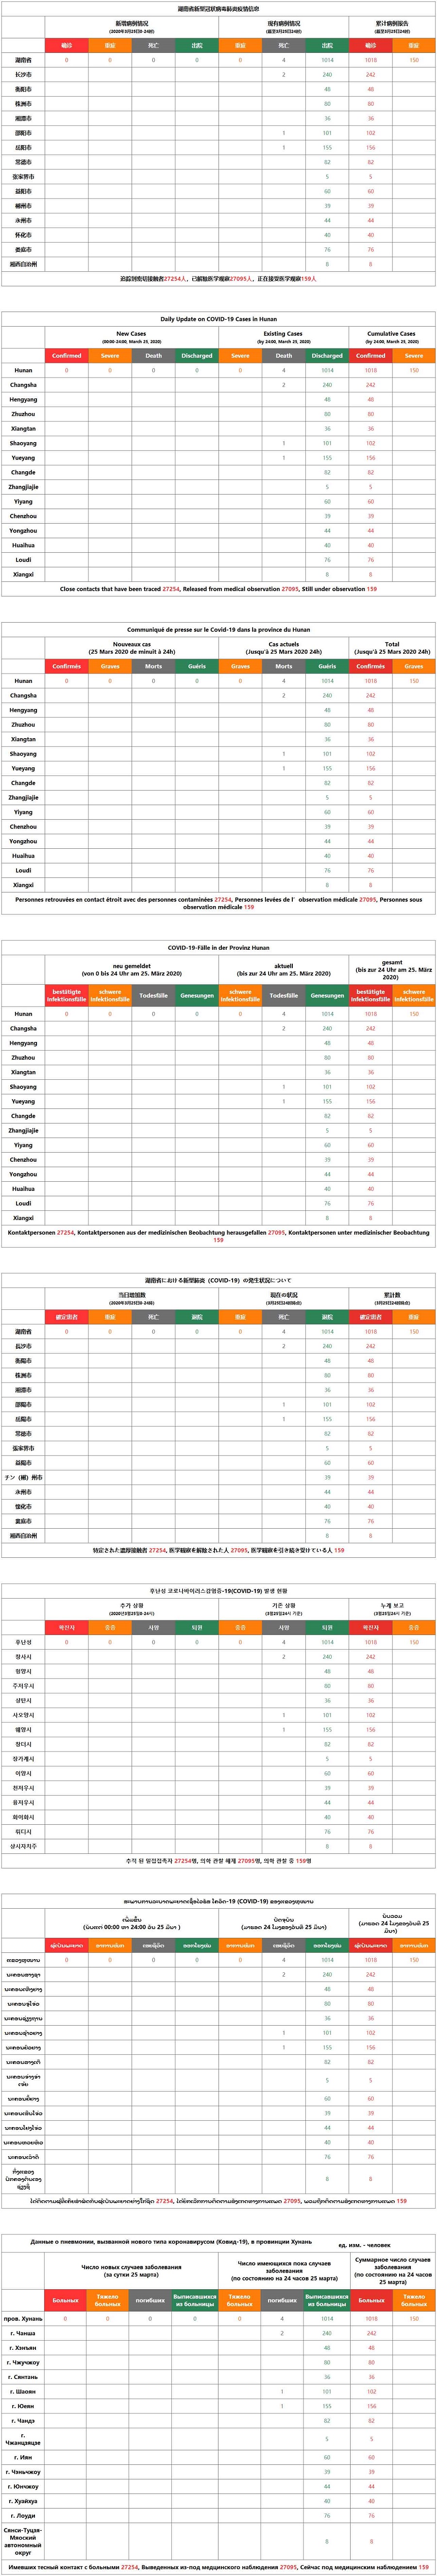 3月25日湖南新型冠状病毒感染肺炎疫情 无新增确诊病例 累计1018例